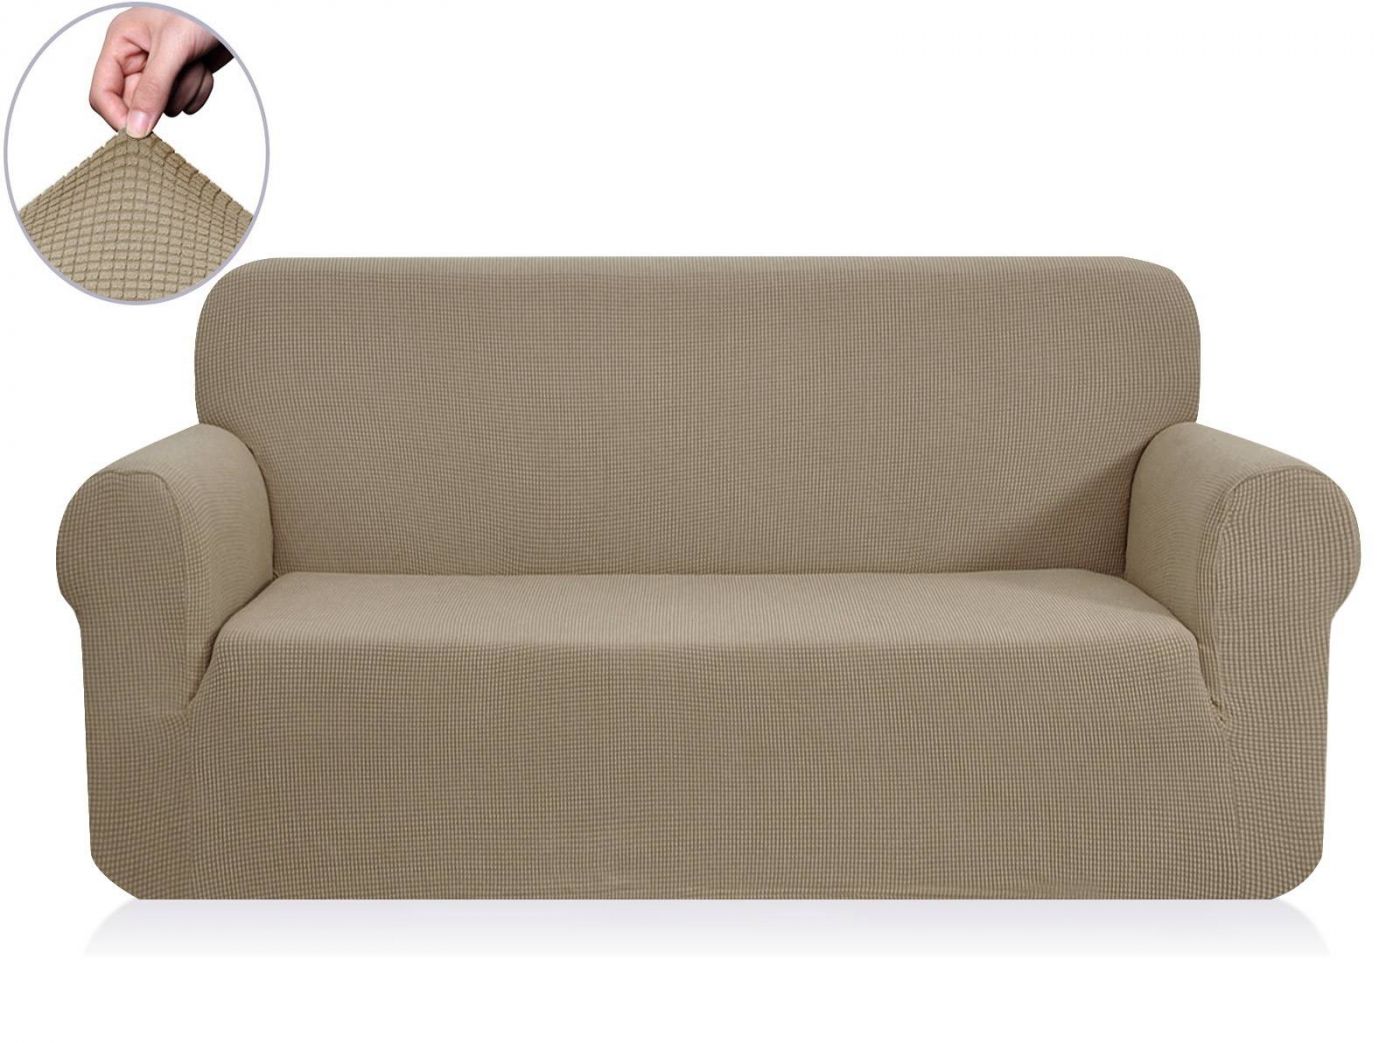 Чехол для дивана Моника цвет: кофейный (Трехместный), размер Без наволочек sofi881459 Чехол для дивана Моника цвет: кофейный (Трехместный) - фото 1